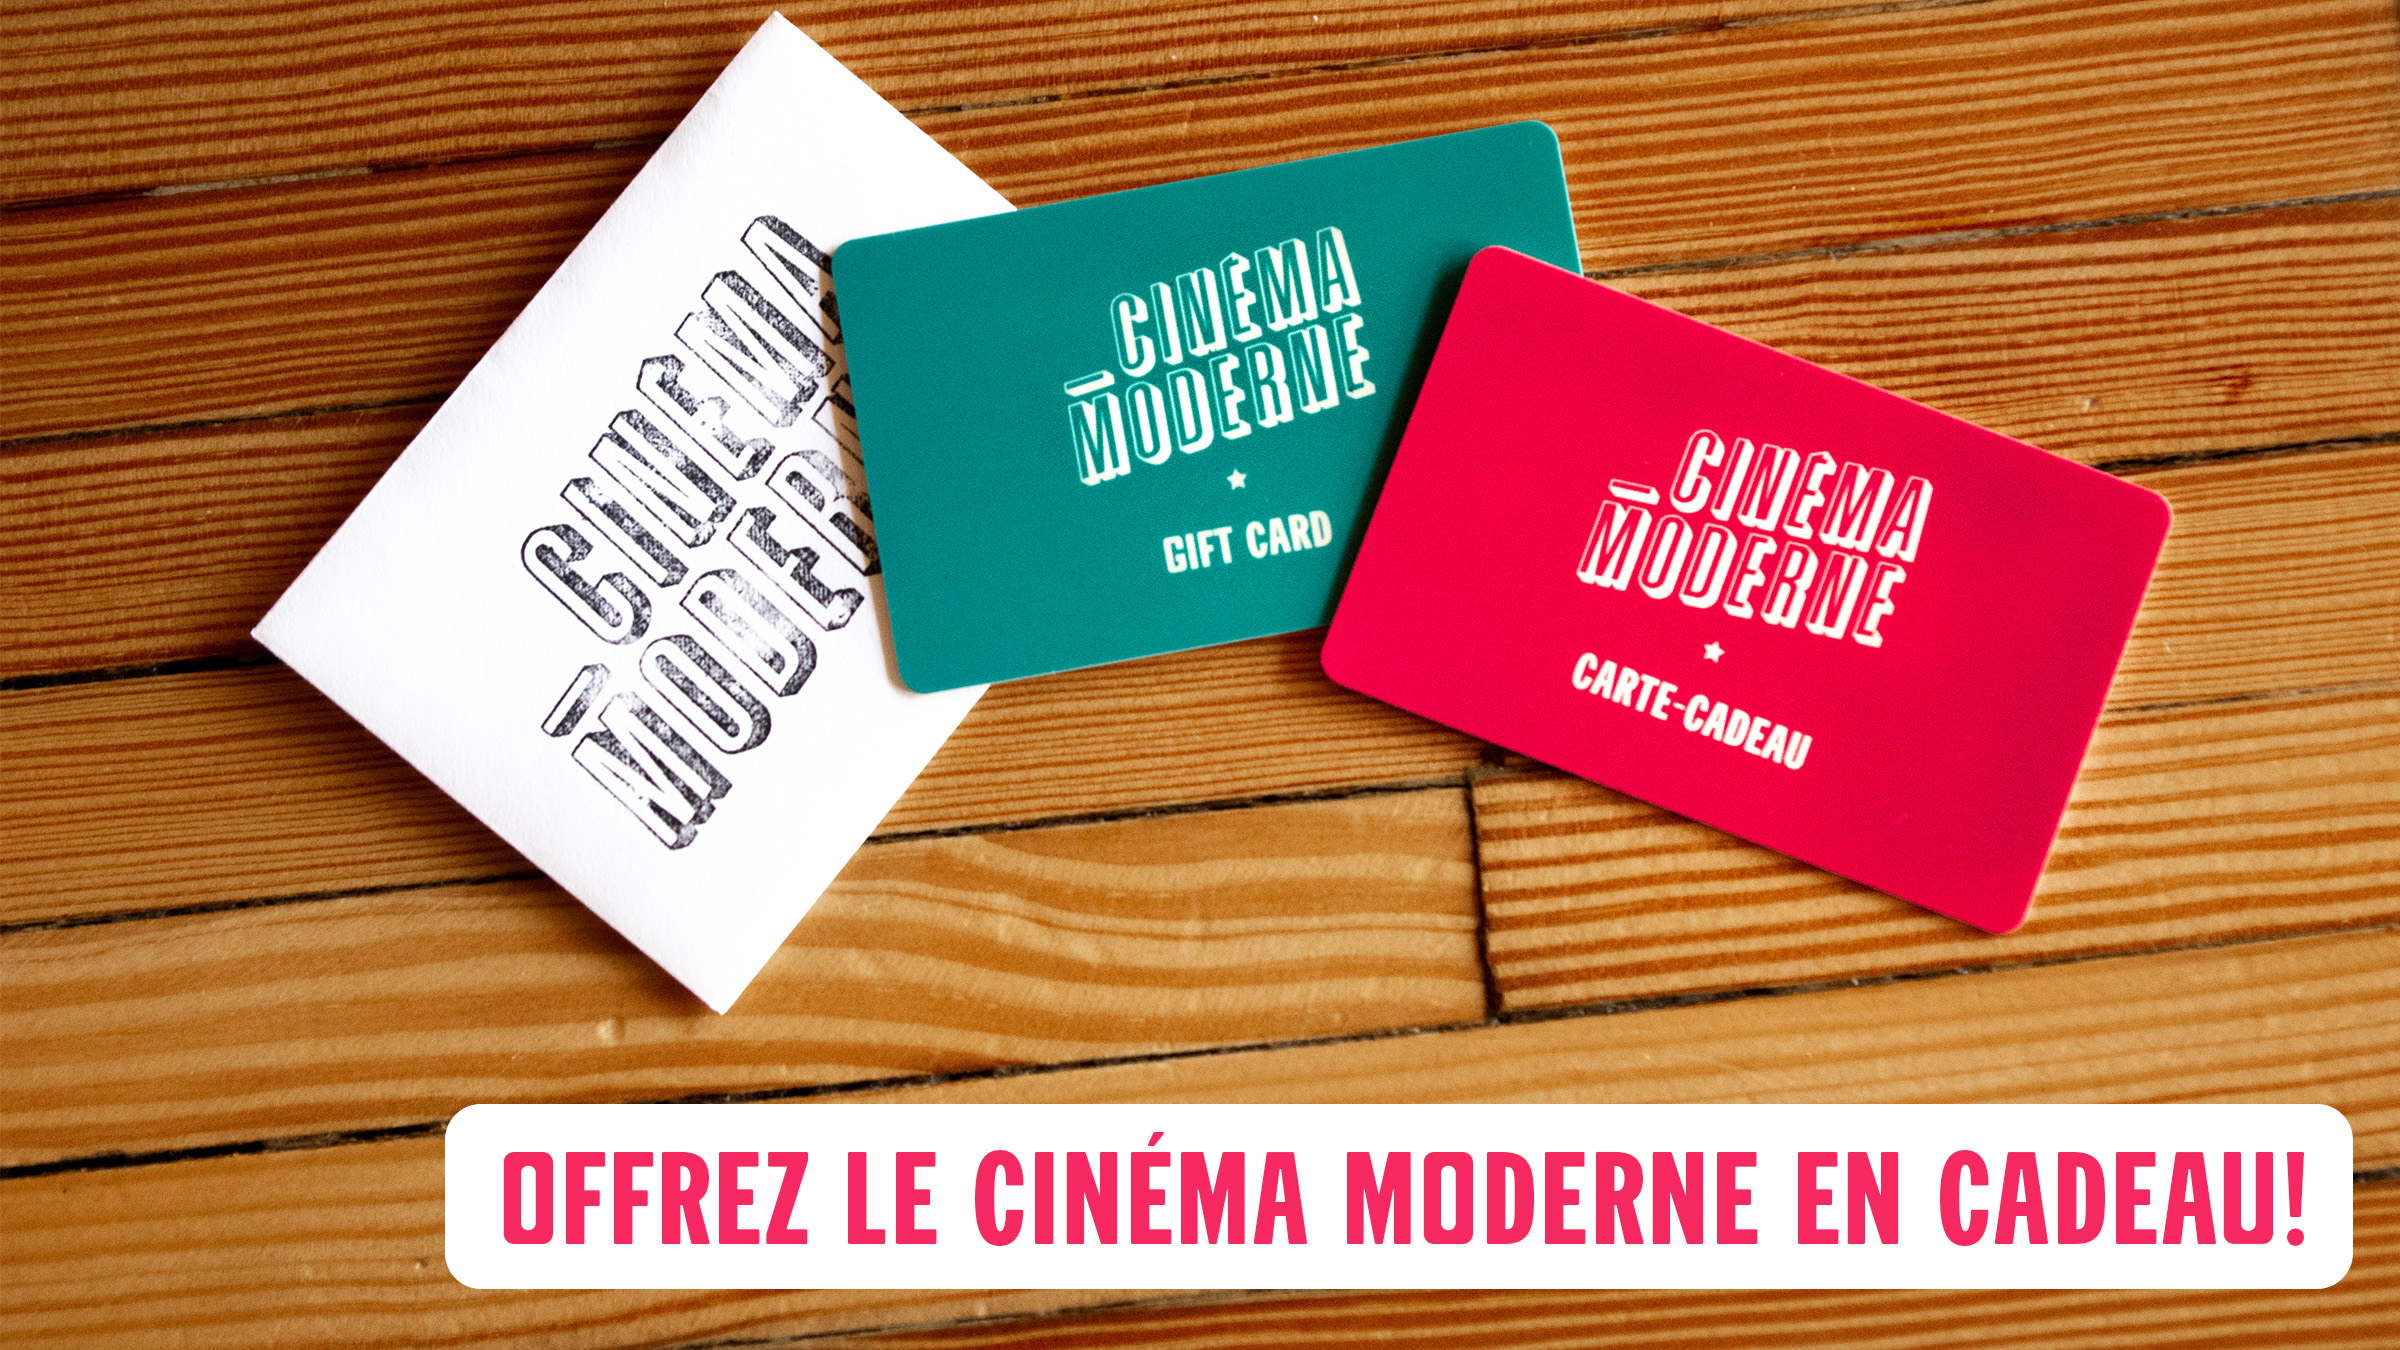 Cartes-cadeaux - Cinéma Moderne